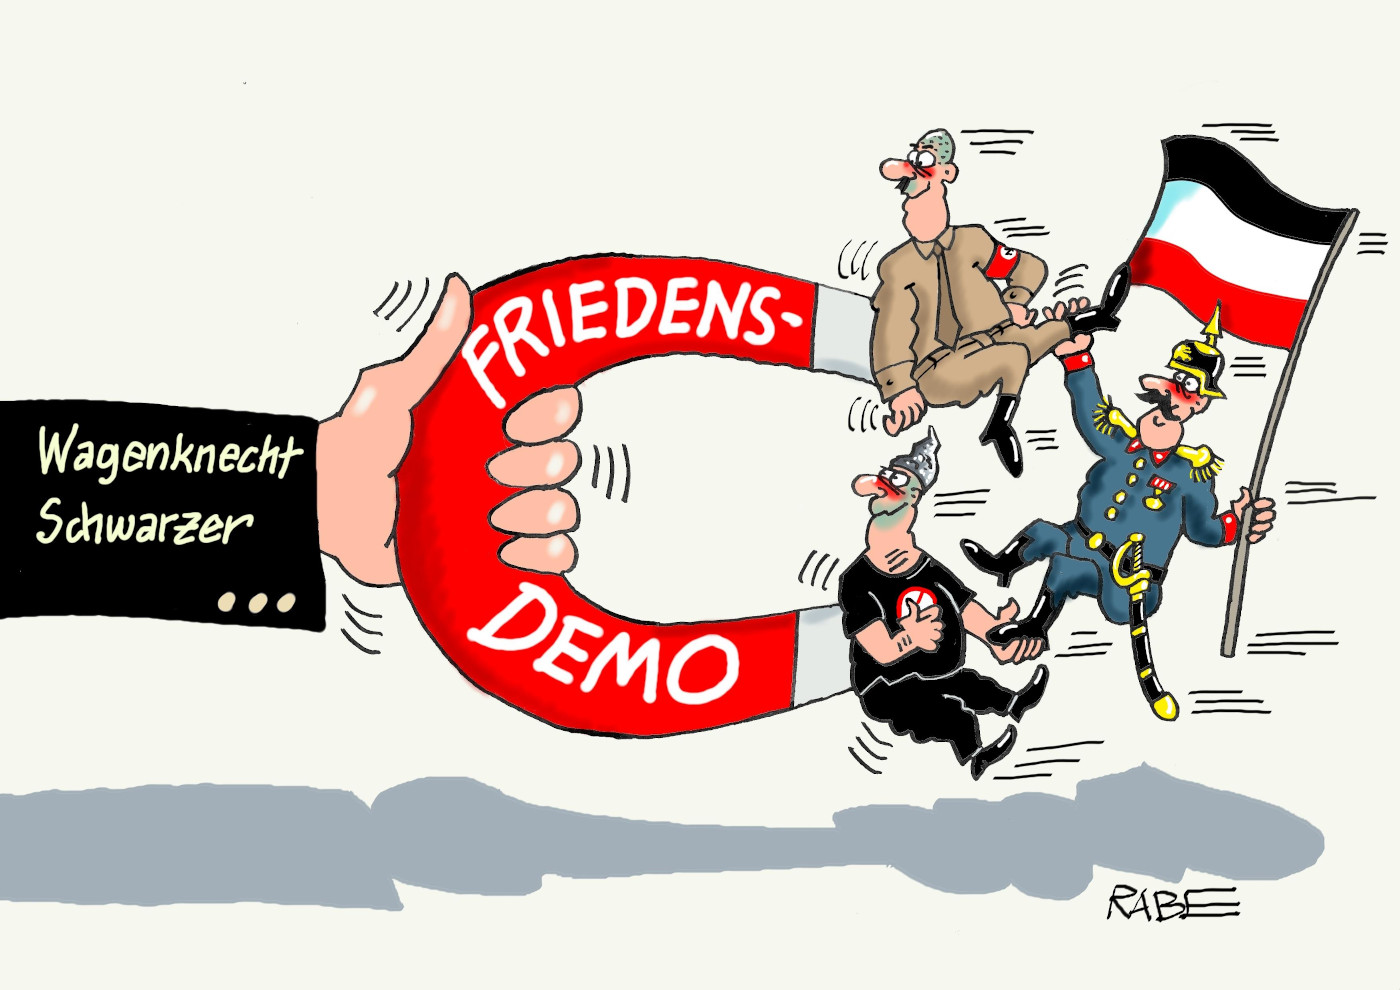 Das Bild zeigt die Karikatur "Magnetfeld" von Karikaturist RABE. Sie thematisiert die Demo "Aufstand für den Frieden" von Sarah Wagenknecht und Alice Schwarzer.